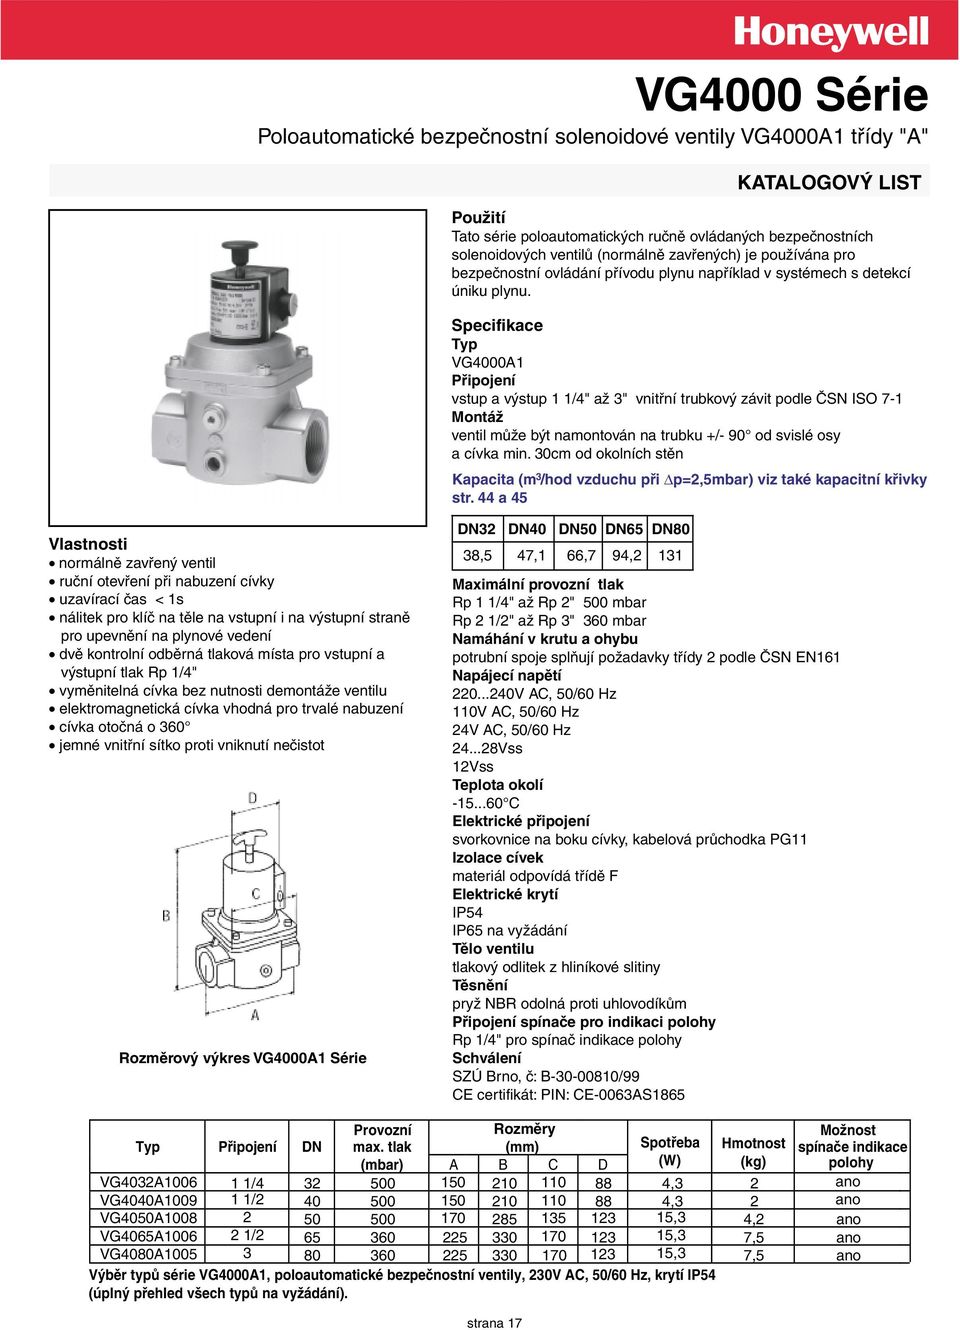 Specifikace Typ VG4000A1 Připojení vstup a výstup 1 1/4" až " vnitřní trubkový závit podle ČSN ISO 7-1 Montáž ventil může být namontován na trubku +/- 90 od svislé osy a cívka min.